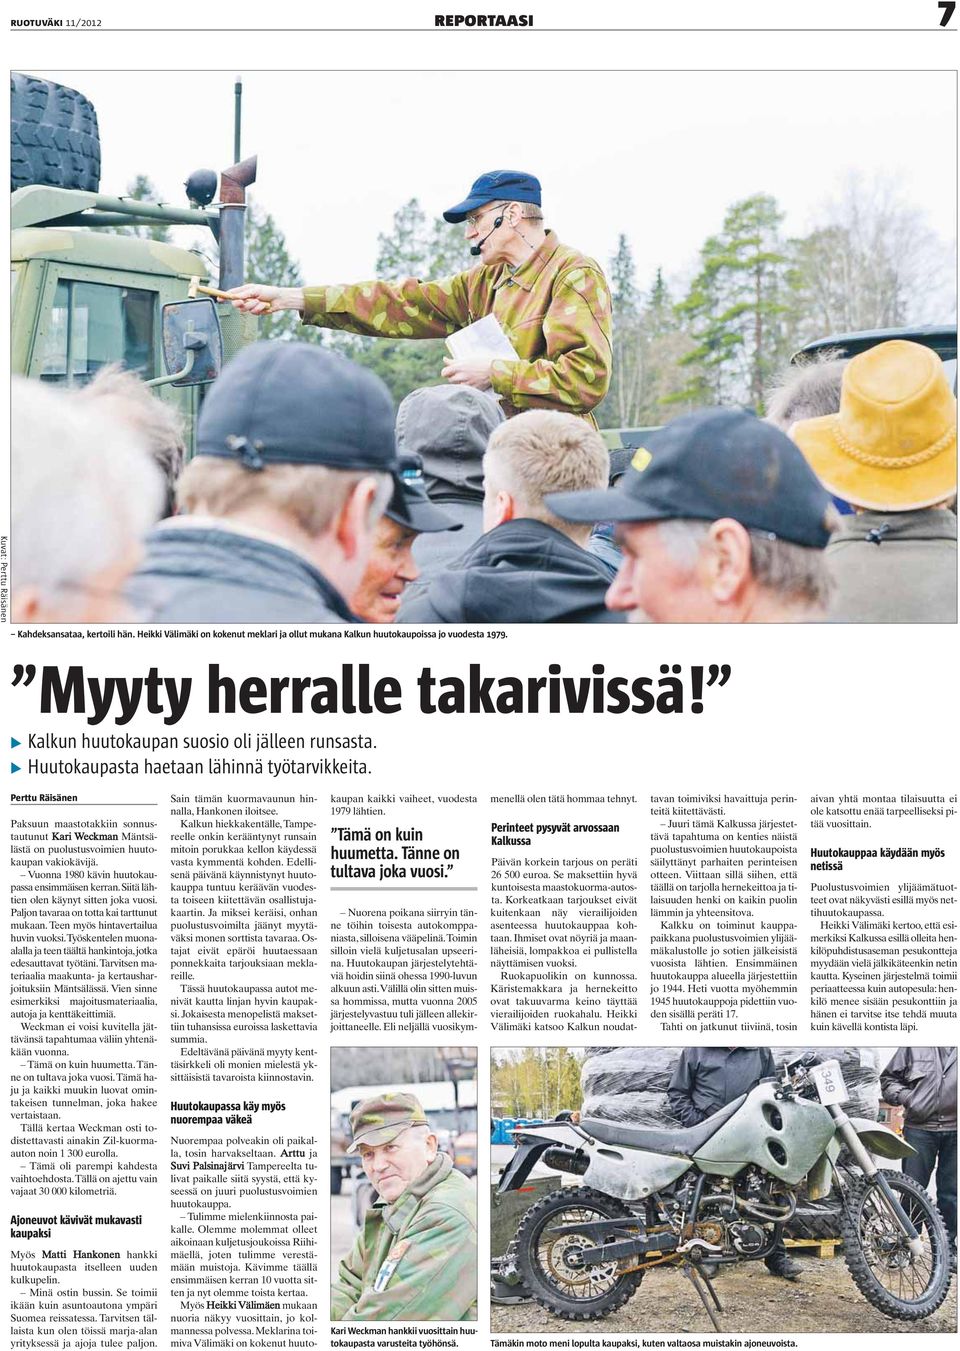 Perttu Räisänen Paksuun maastotakkiin sonnustautunut Kari Weckman Mäntsälästä on puolustusvoimien huutokaupan vakiokävijä. Vuonna 1980 kävin huutokaupassa ensimmäisen kerran.